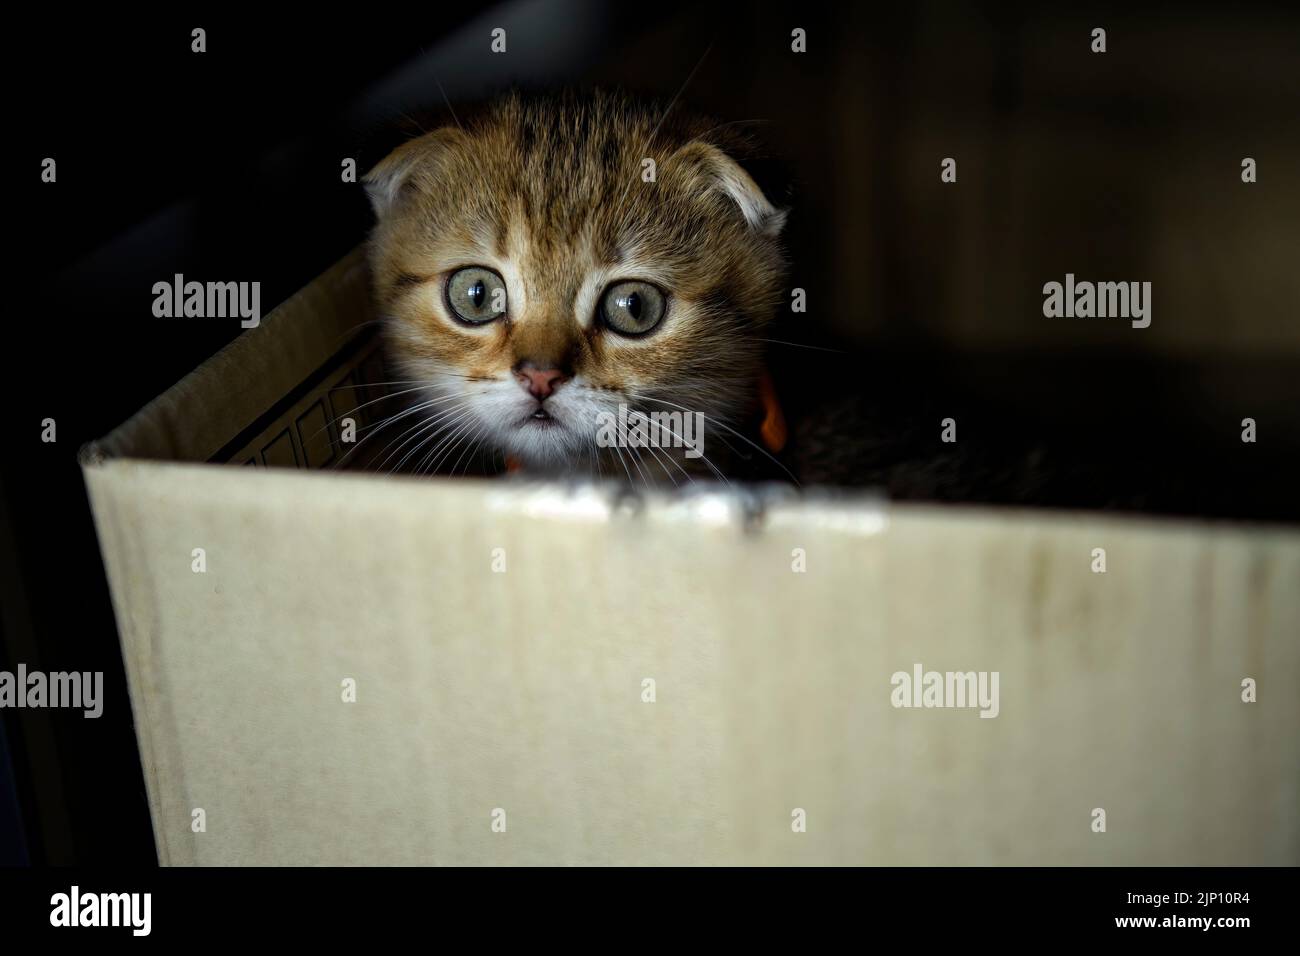 Gatito escocés de rayas jugando travieso y secretamente en la caja en la oscuridad y mirando, el pequeño gato escondido en una caja de cartón parecía lamentable. Foto de stock